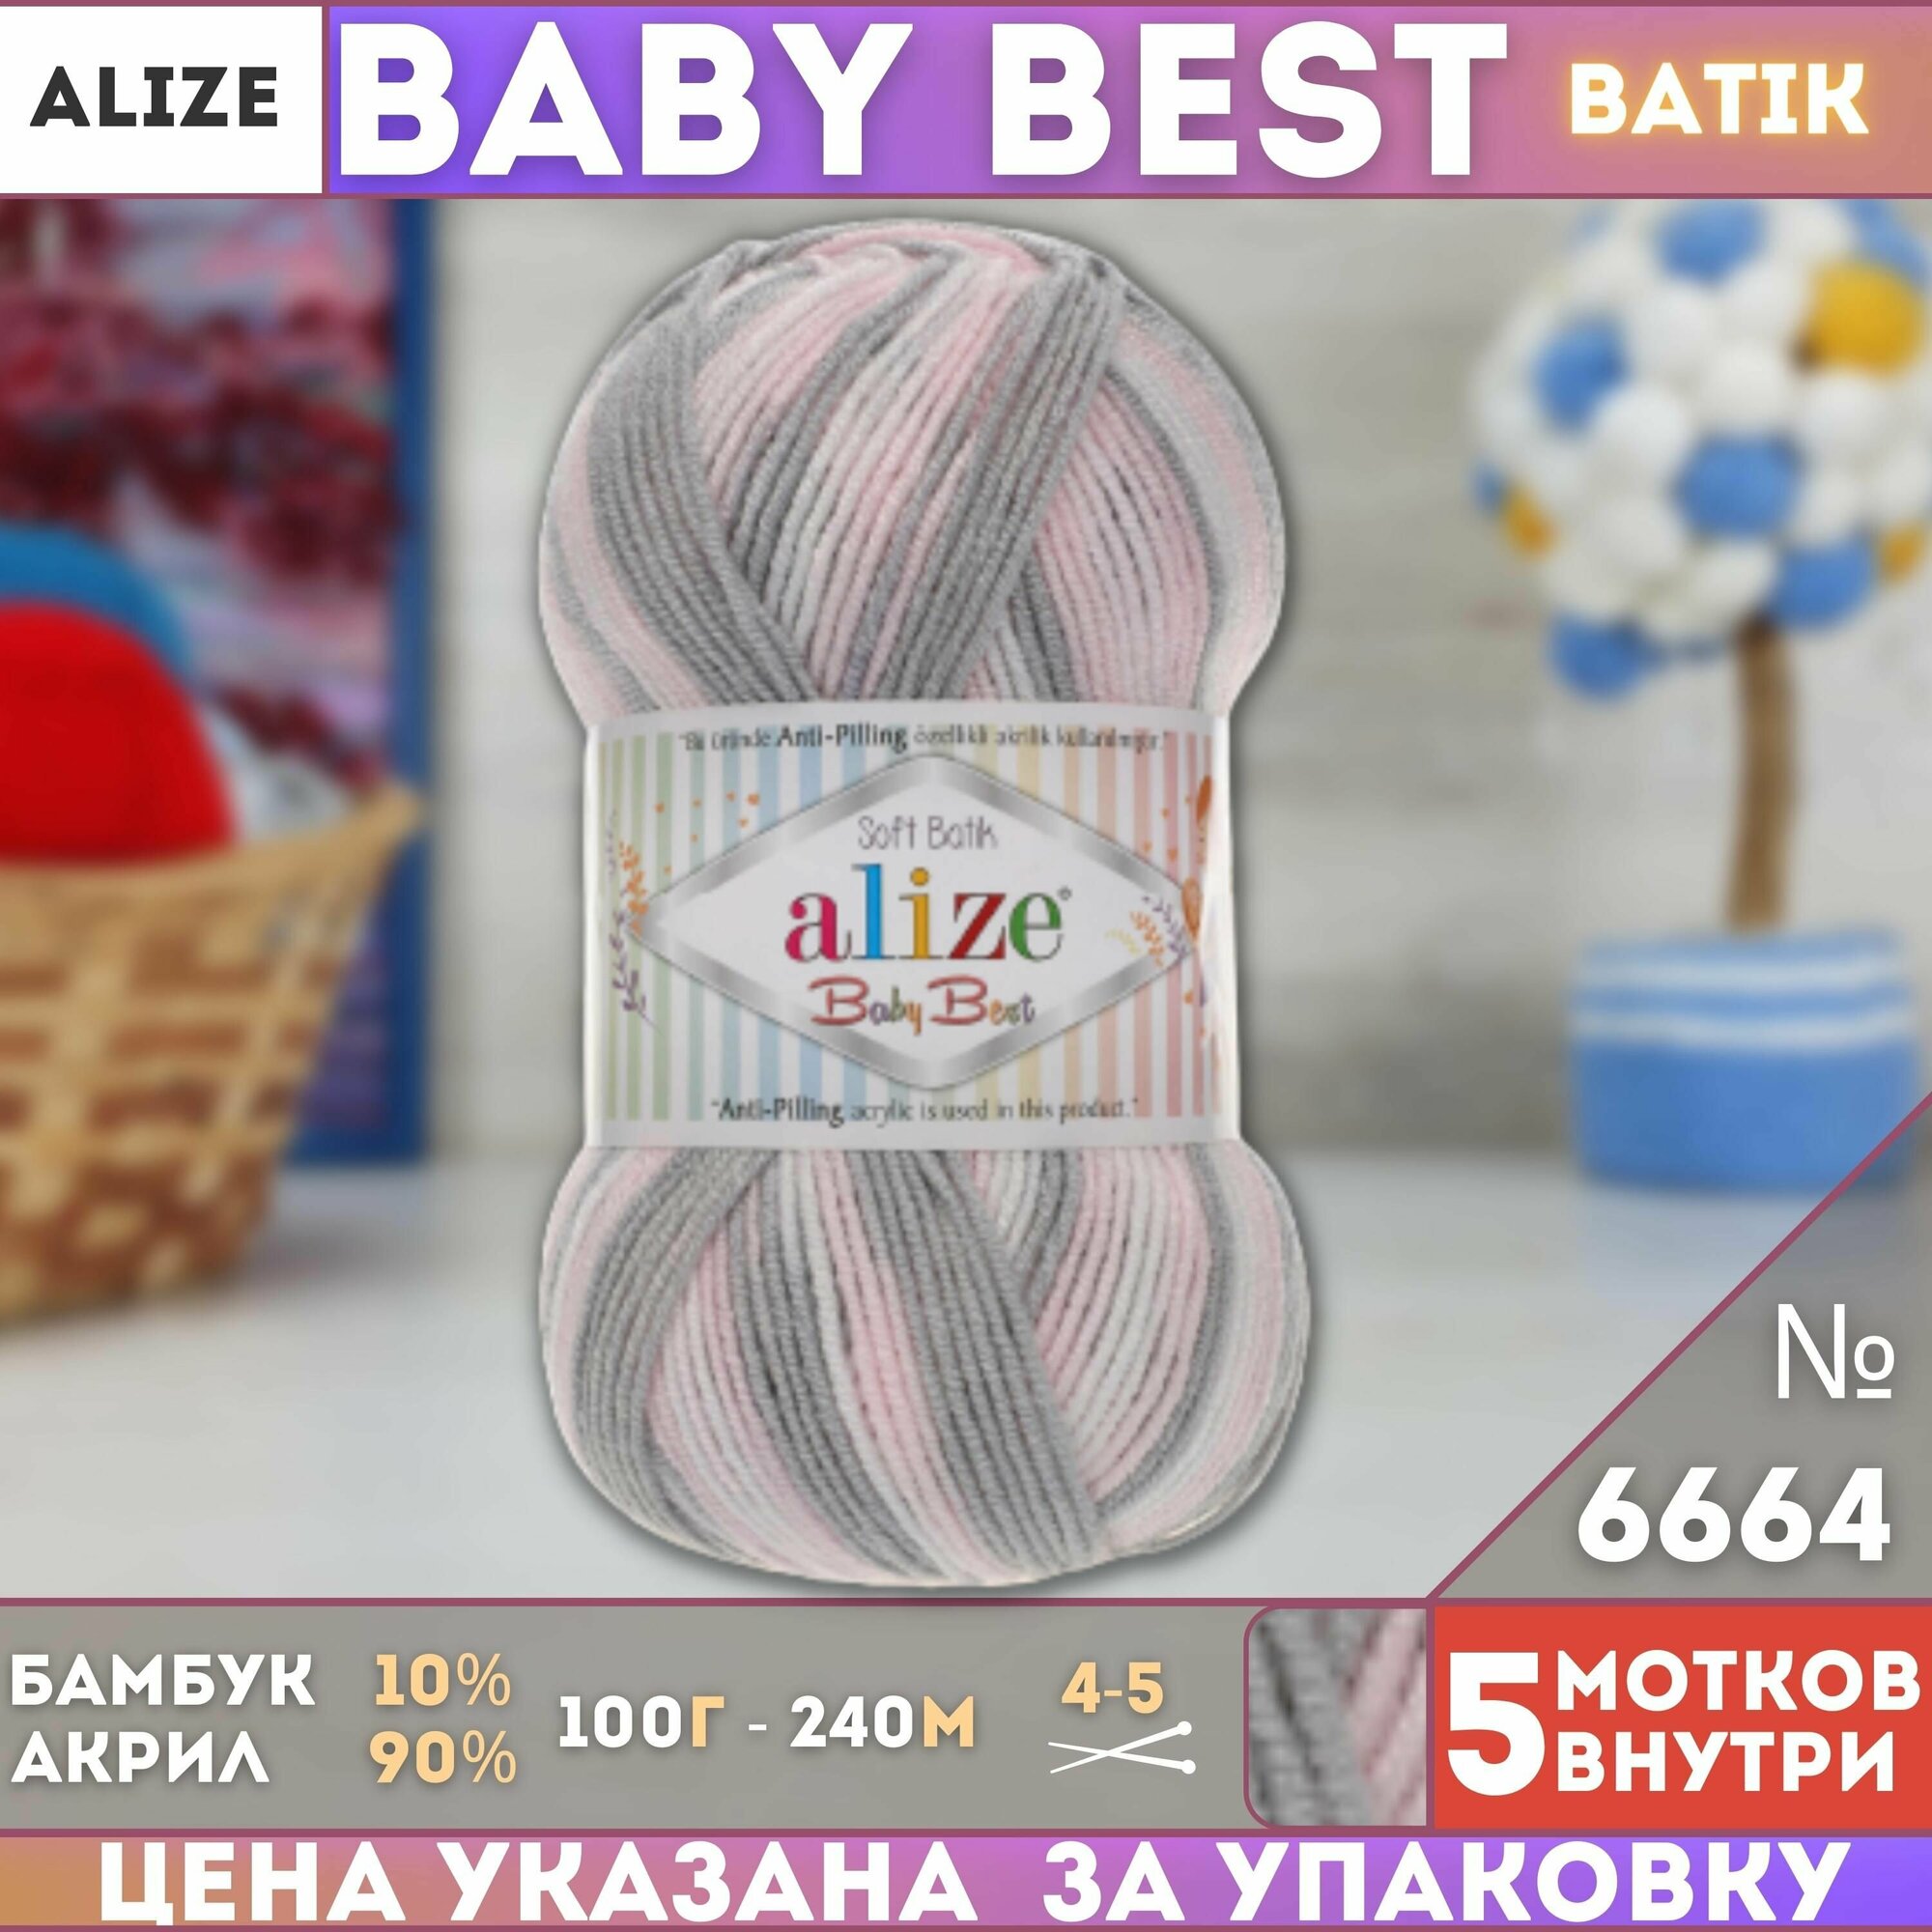 Пряжа BABY BEST BATIK (Alize), серо-розовый - 6664, 10% бамбук, 90% акрил, 5 мотков, 100 г, 240 м.